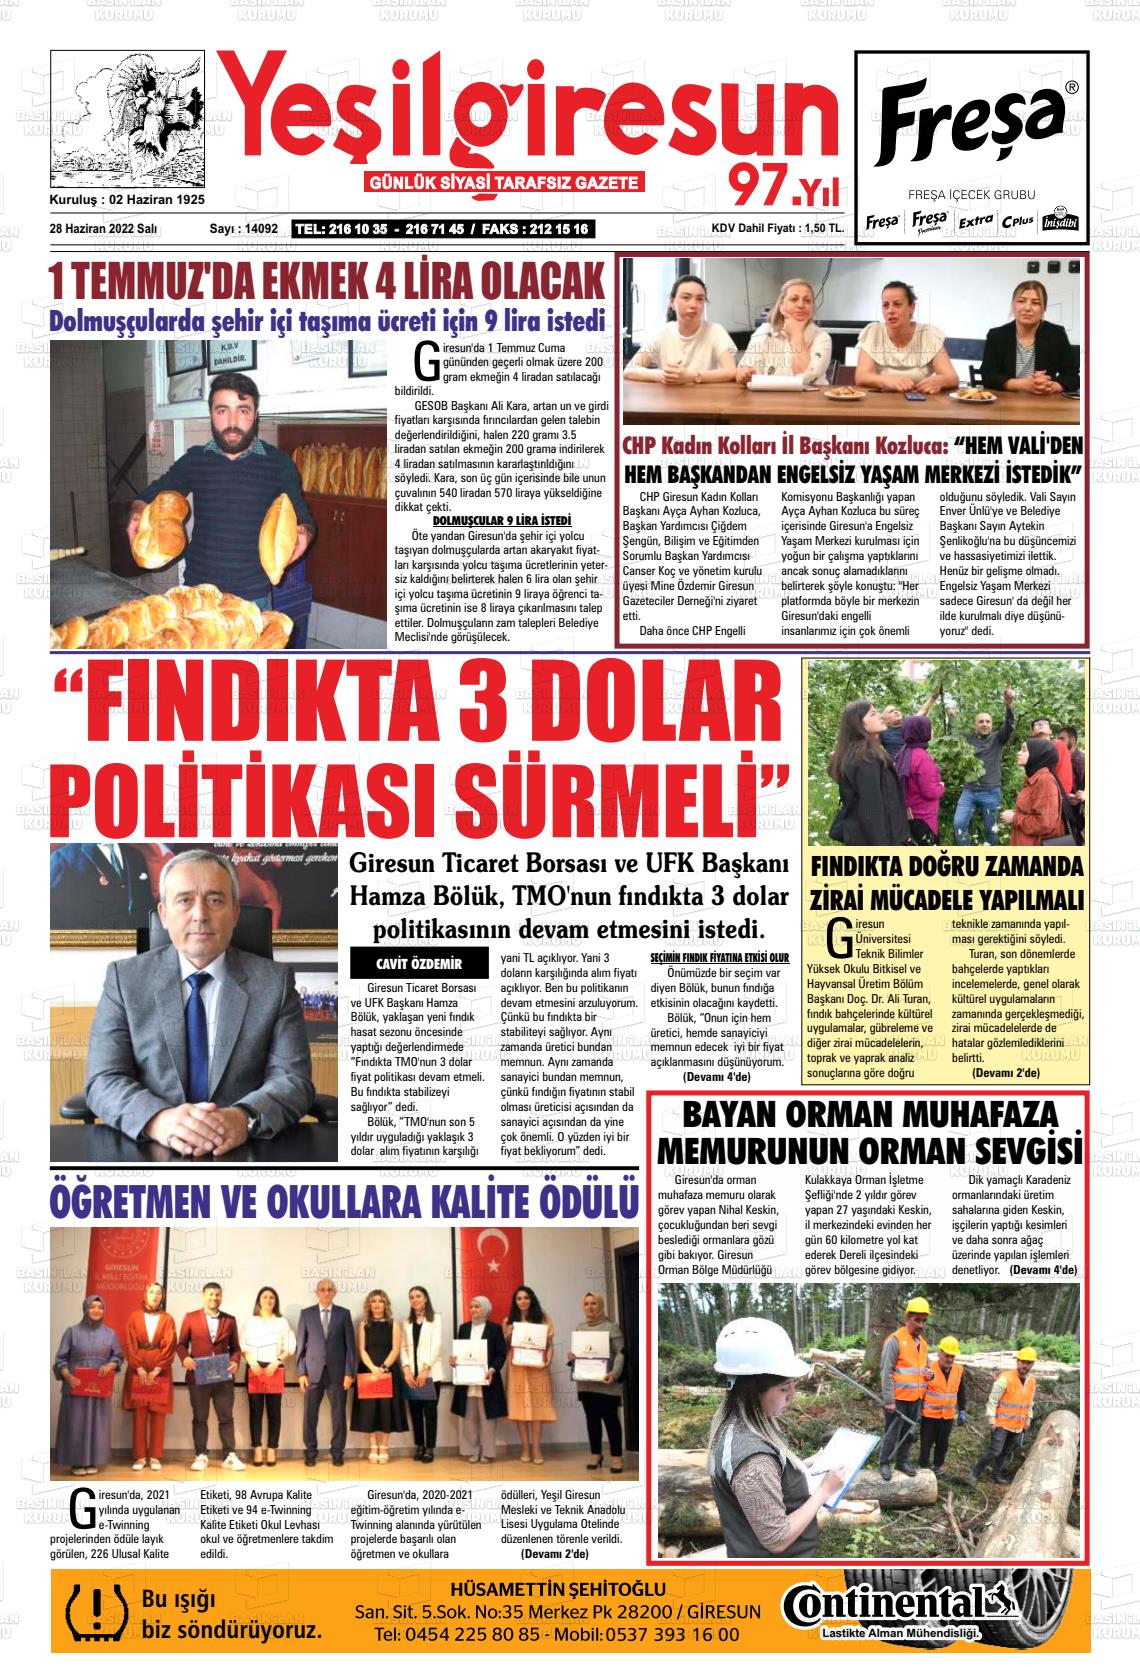 28 Haziran 2022 Yeşil Giresun Gazete Manşeti